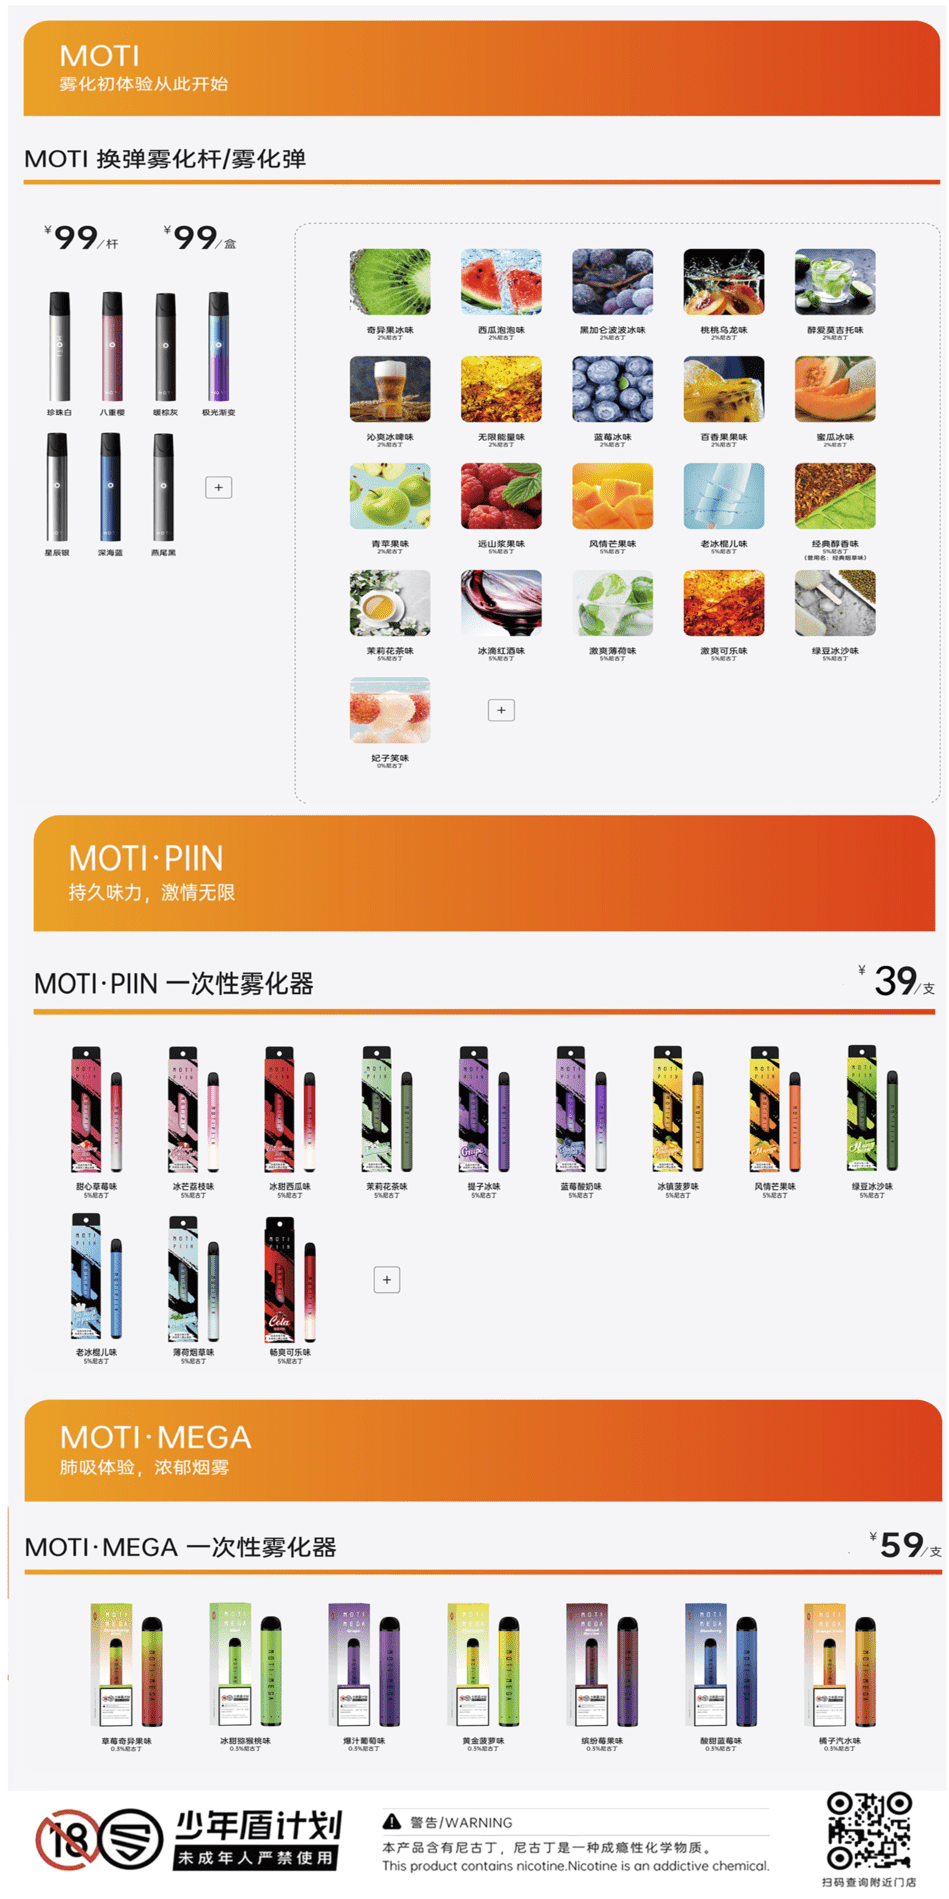 魔笛电子烟官方售价是多少钱？哪里能买到更便宜的魔笛产品？